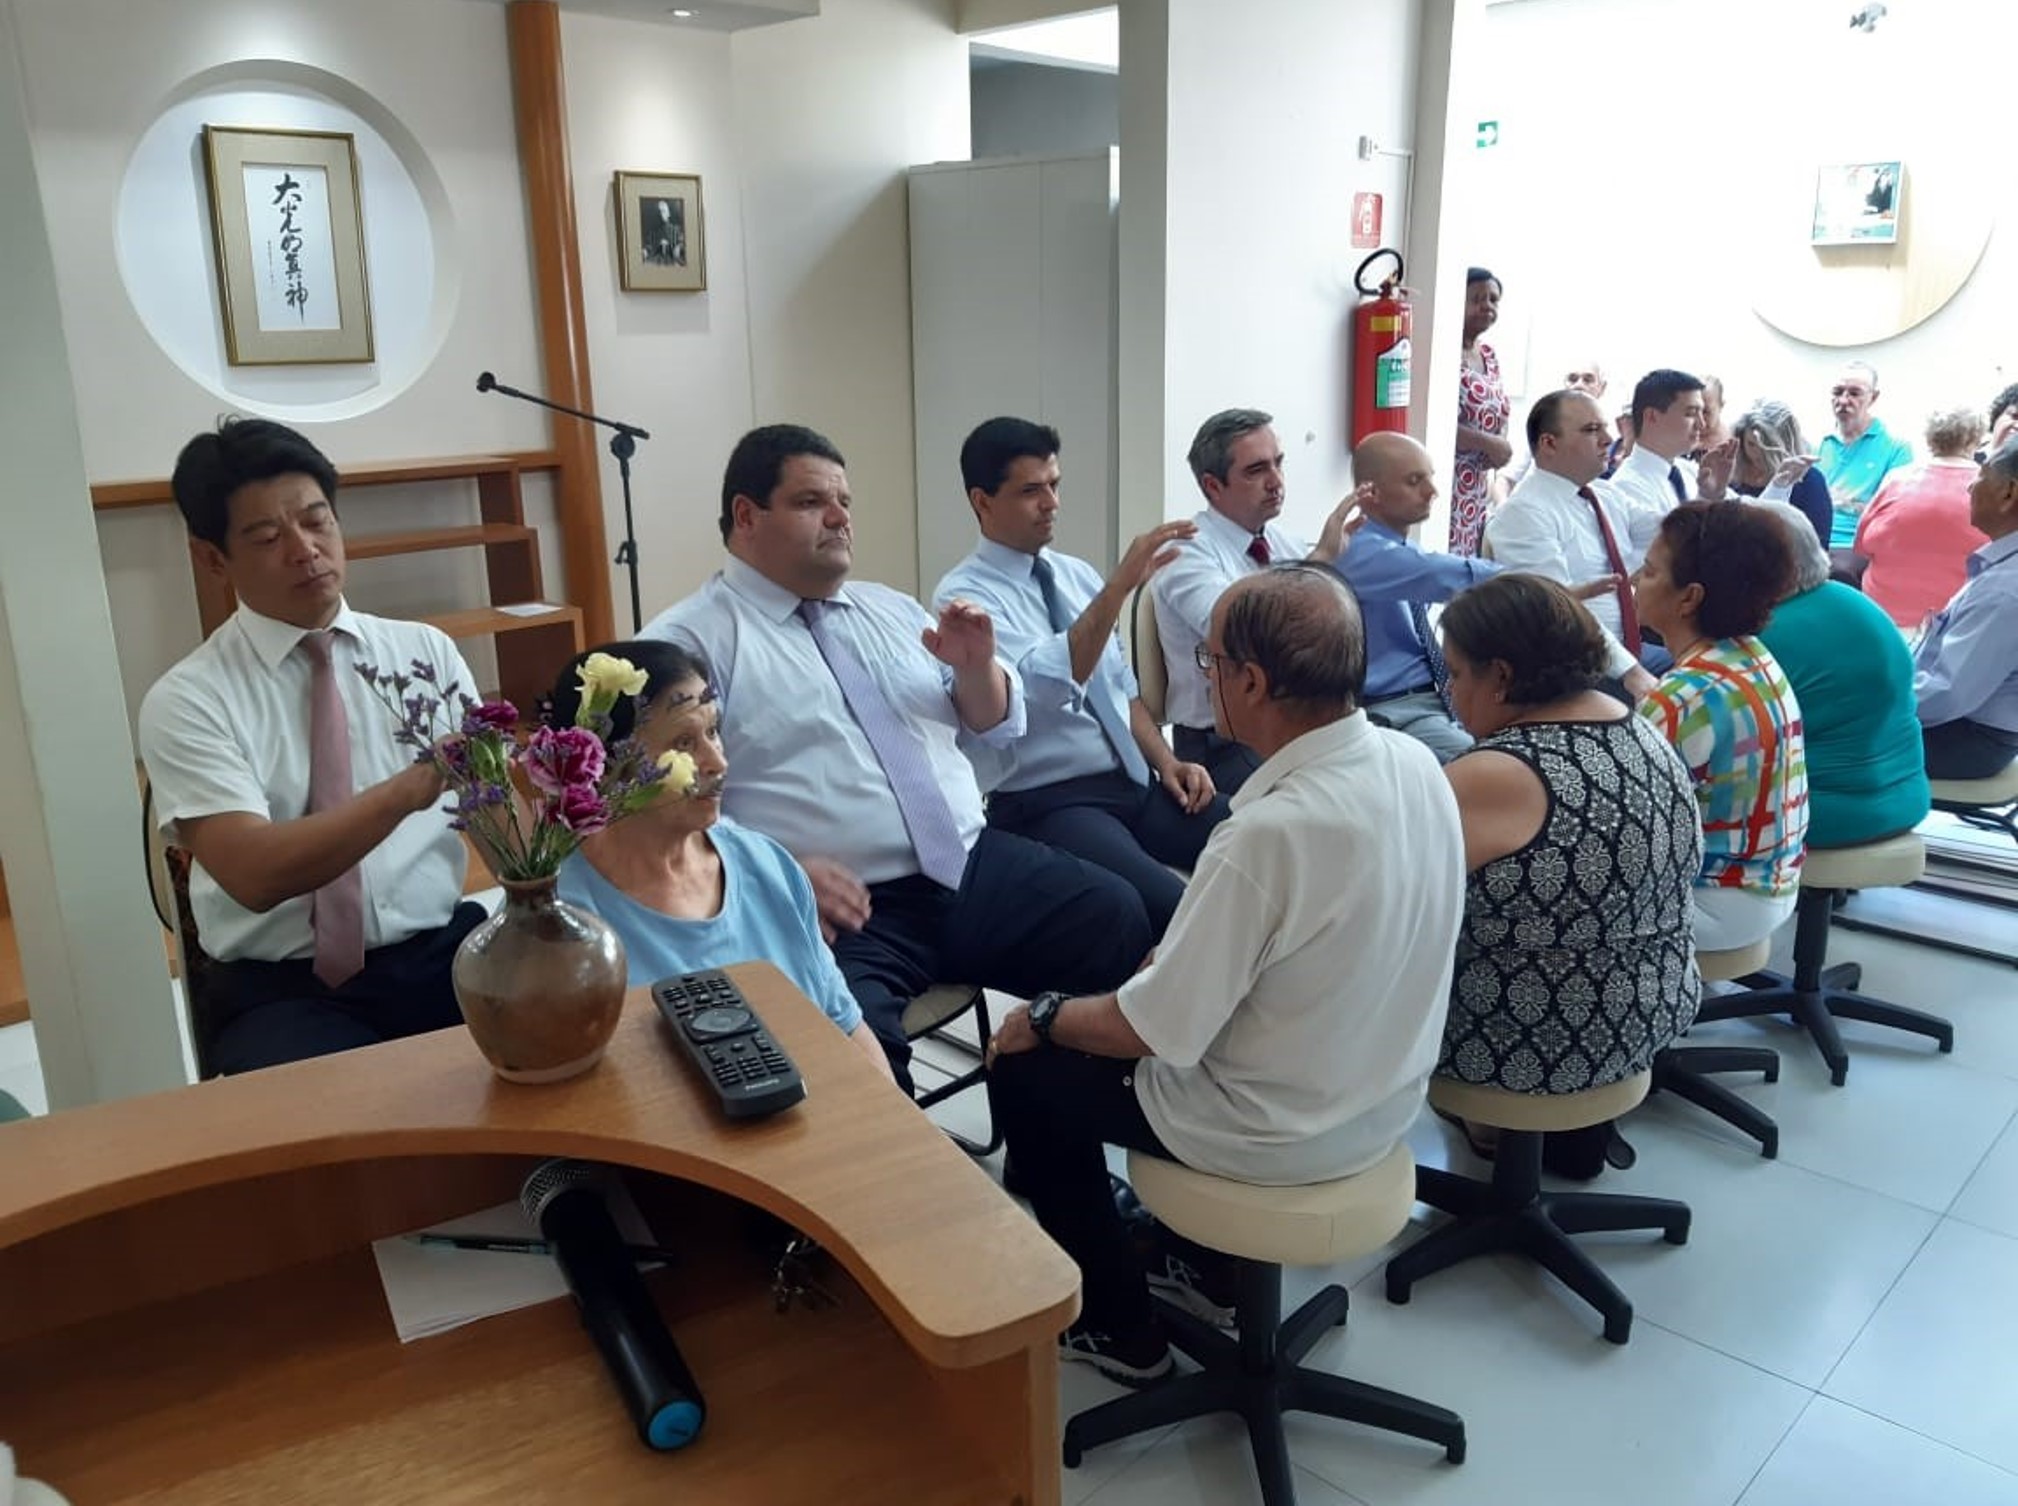 Sacerdotes da Região SP - 3 iniciam visitas aos Johrei Centers da região